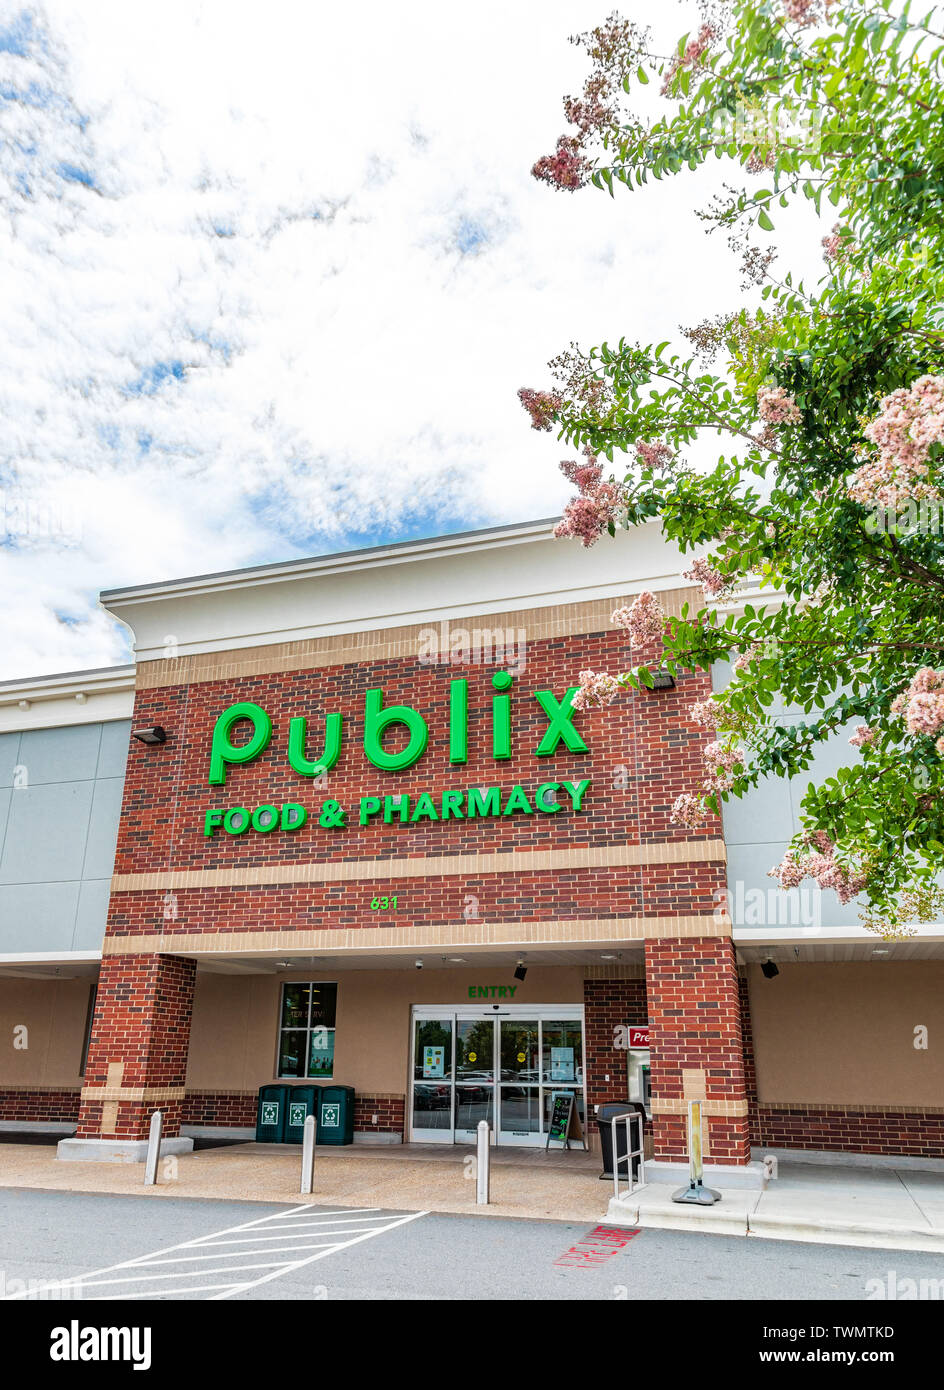 MOORESVILLE, NC, USA - 19. JUNI 2019: Publix Essen & Apotheke Gebäude und viel Parkplatz. Bild vertikal. Stockfoto